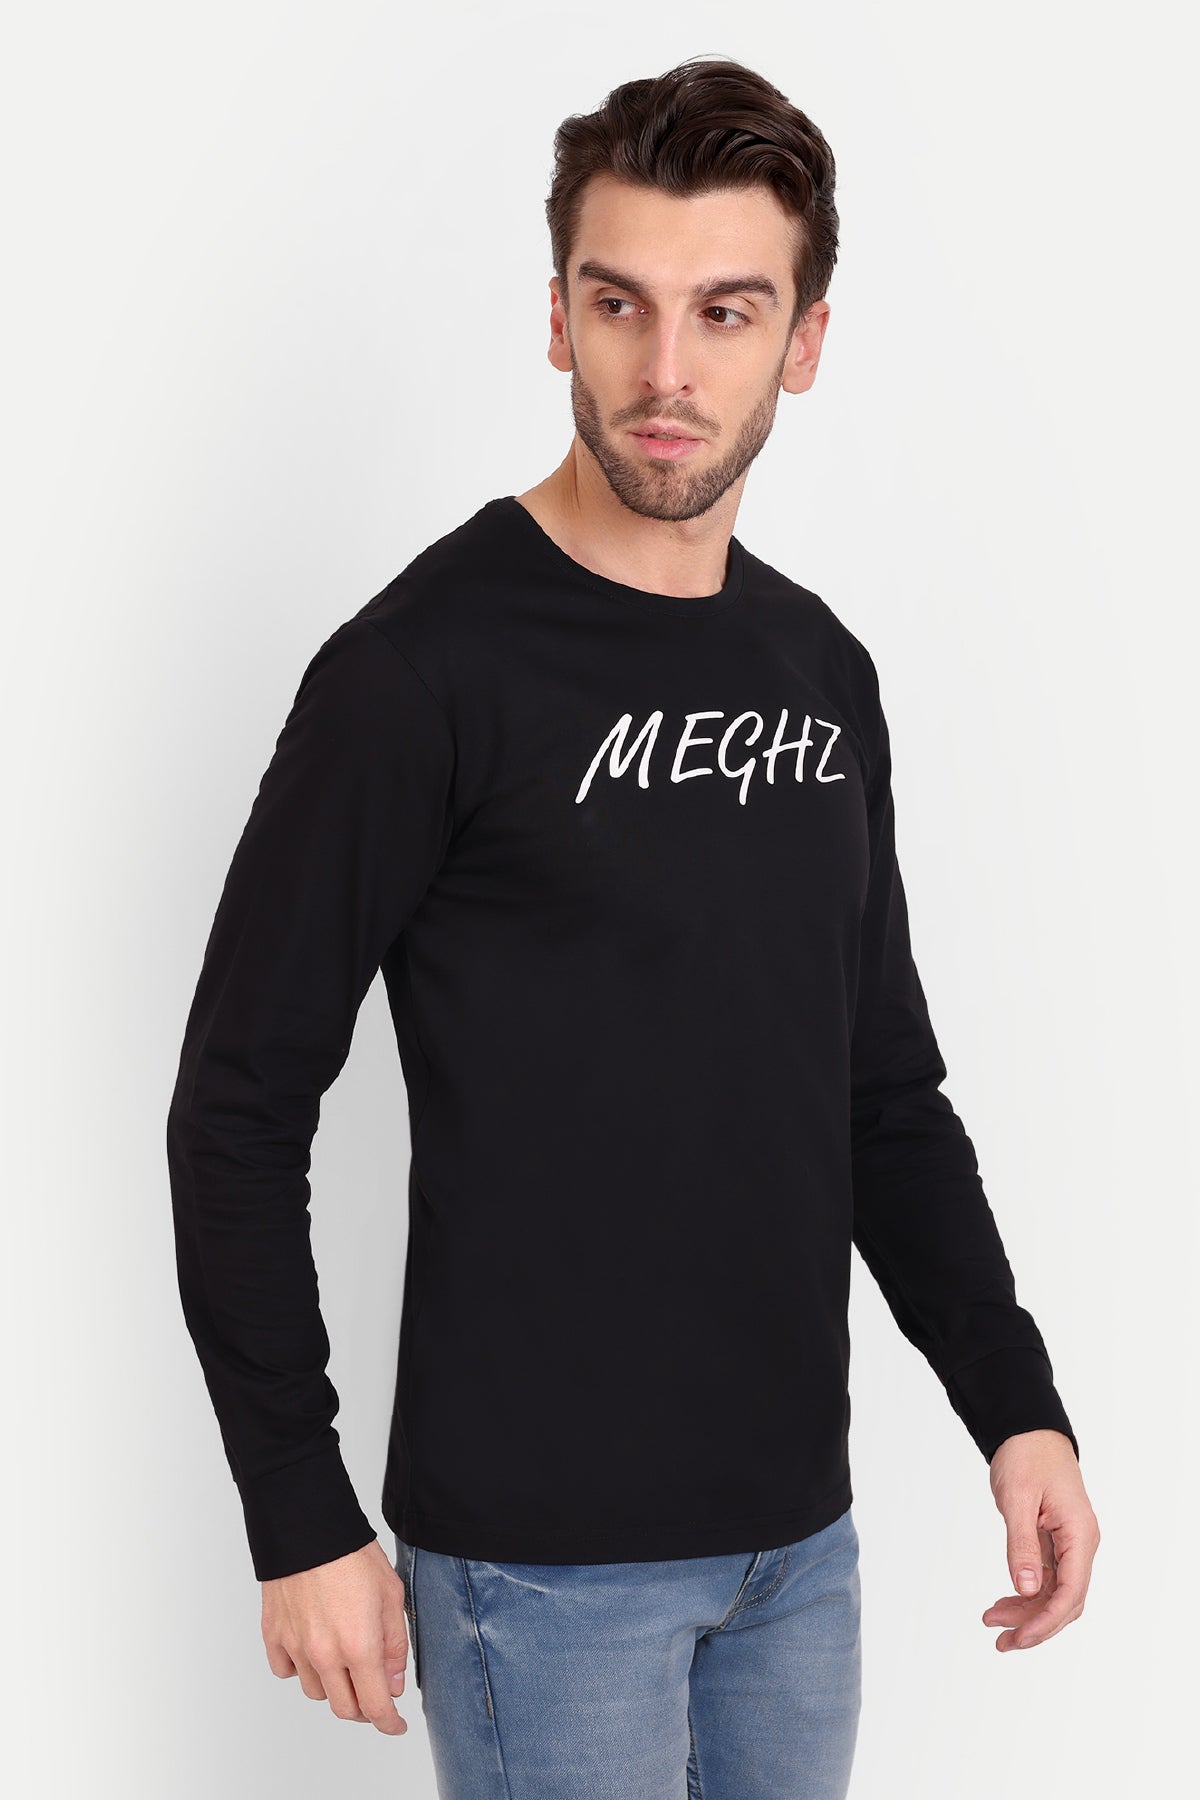 Men's Full Sleeve Black T-Shirt